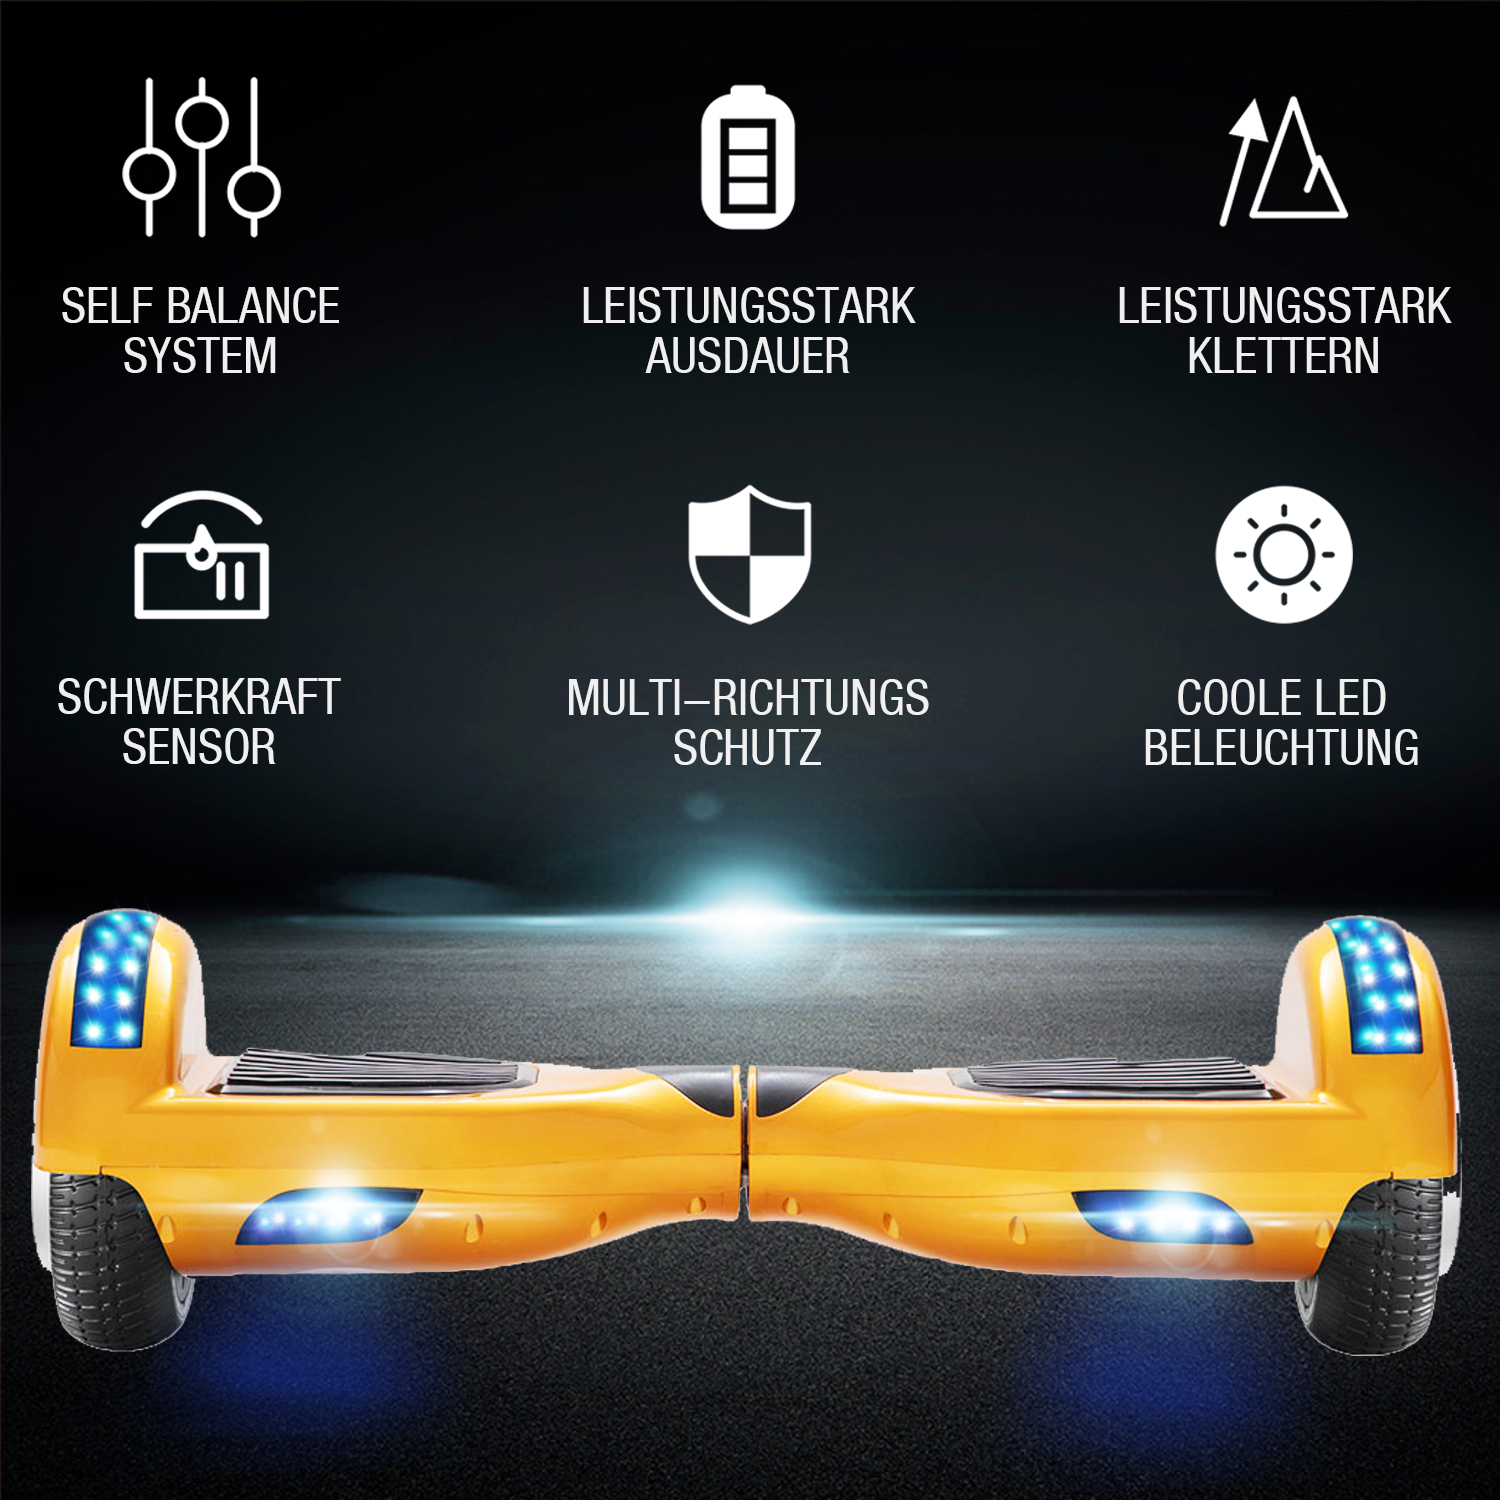 Neues 6,5" gold Hoverboard für Kinder, mit Bluetooth Musik Lautsprecher und Disco LED Licht - 500W 12km/h-Hoverboarde